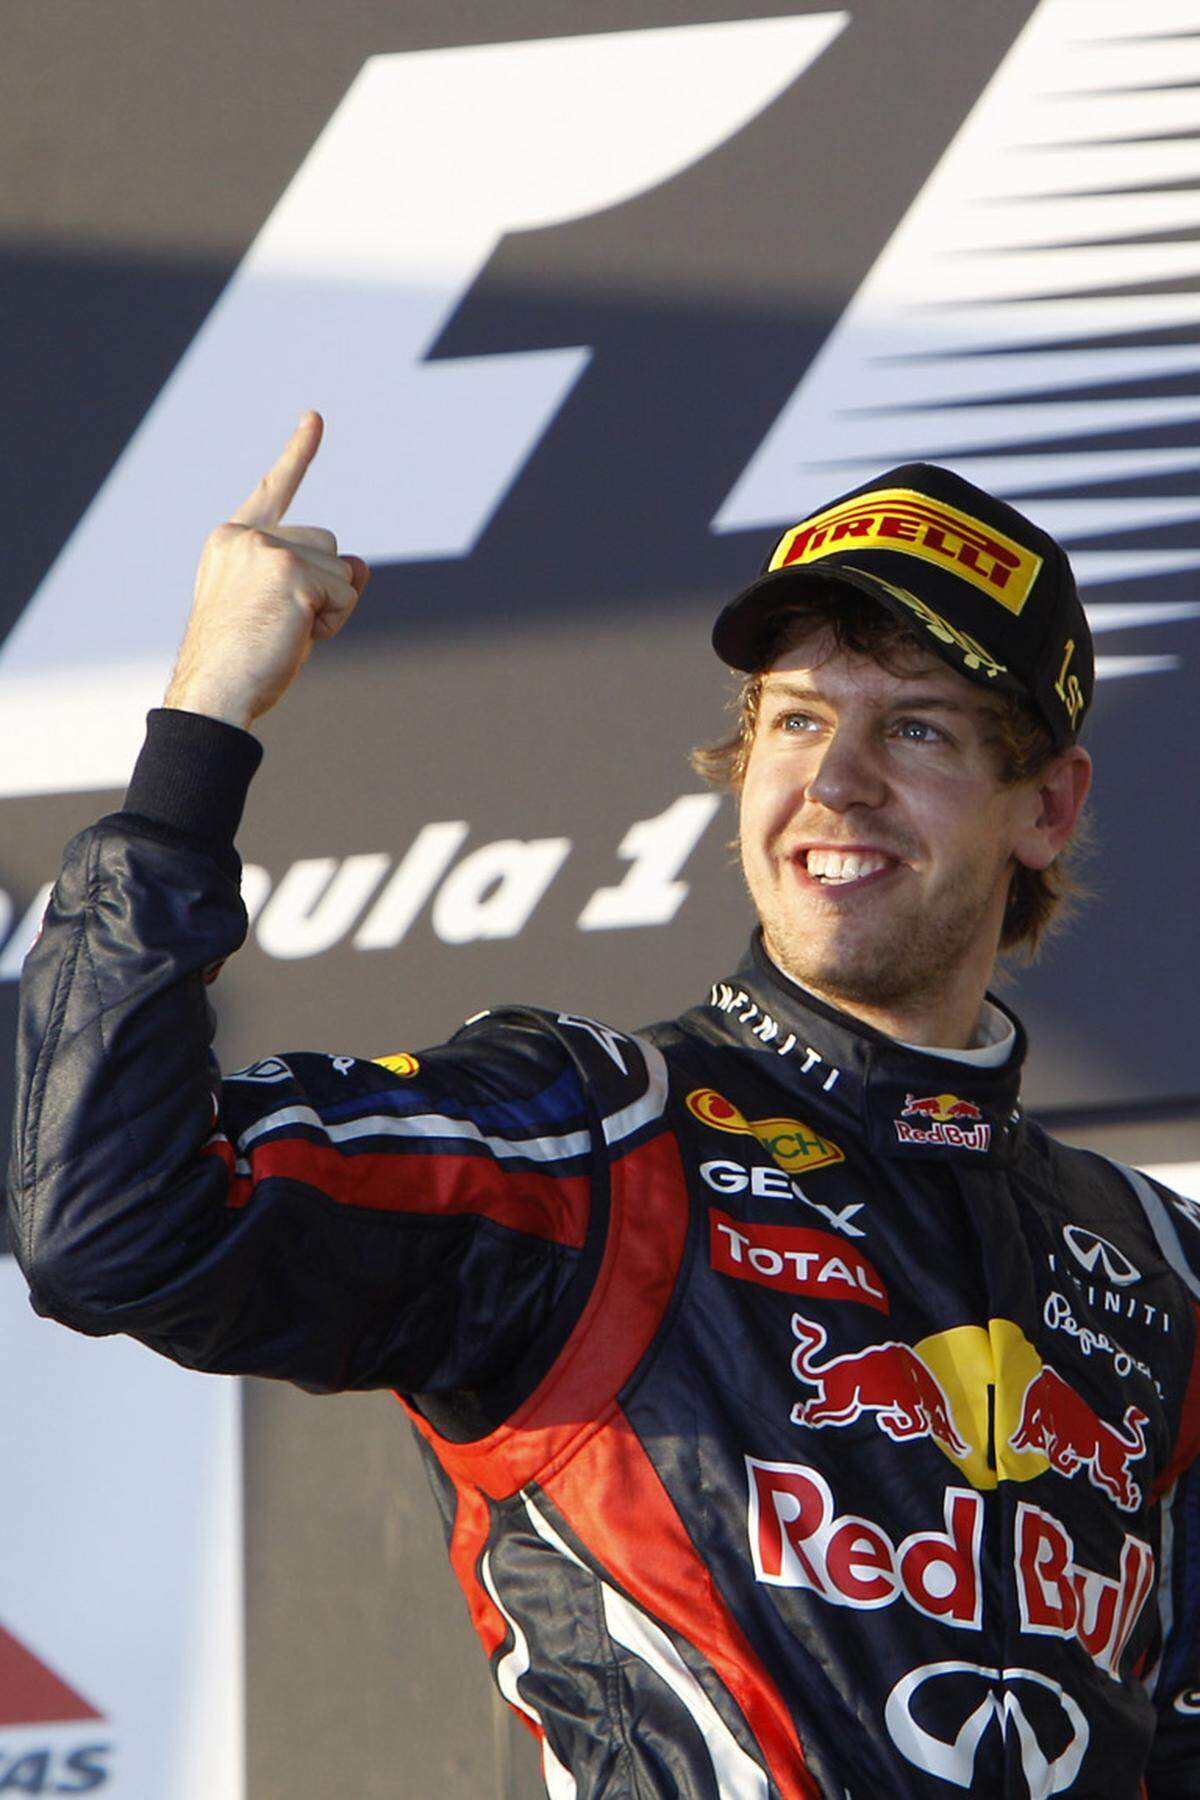 2011 wird das Jahr des erhobenen Sieges-Zeigefingers: Vettel dominiert die Saison wie einst Michael Schumacher in seinen besten Zeiten. Ob in Australien, ...